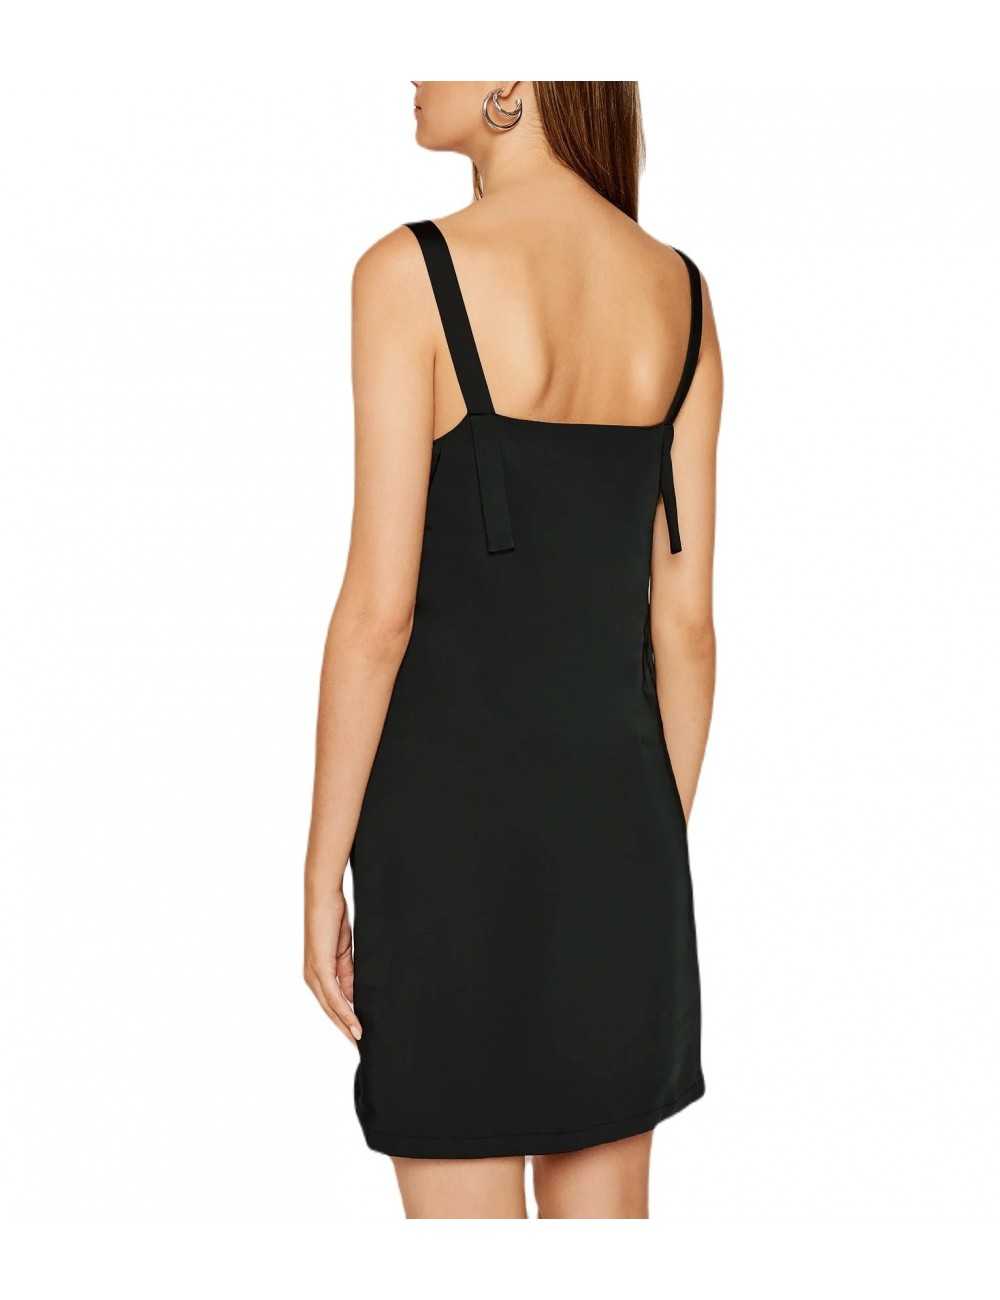 Calvin Klein abito nero in raso a scollatura quadrata - Abiti Donna